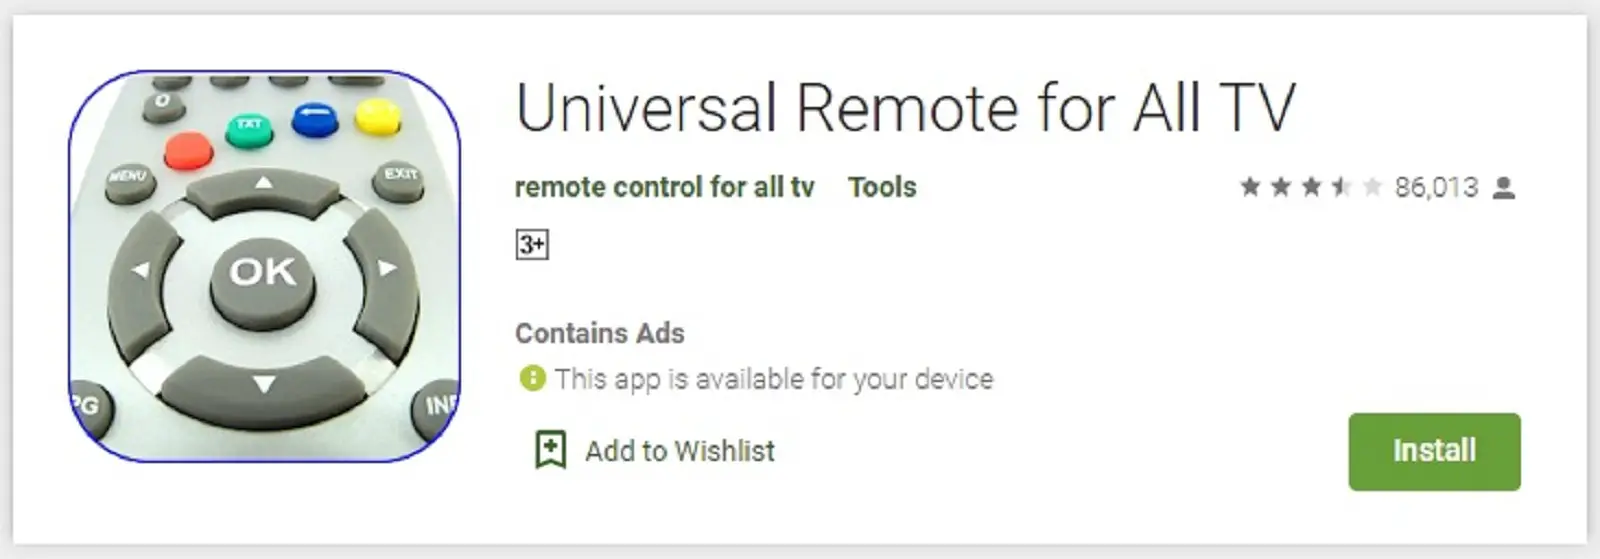 Universal Remote for All TV, Aplikasi Remote TV Tabung Bisa Semua Merk